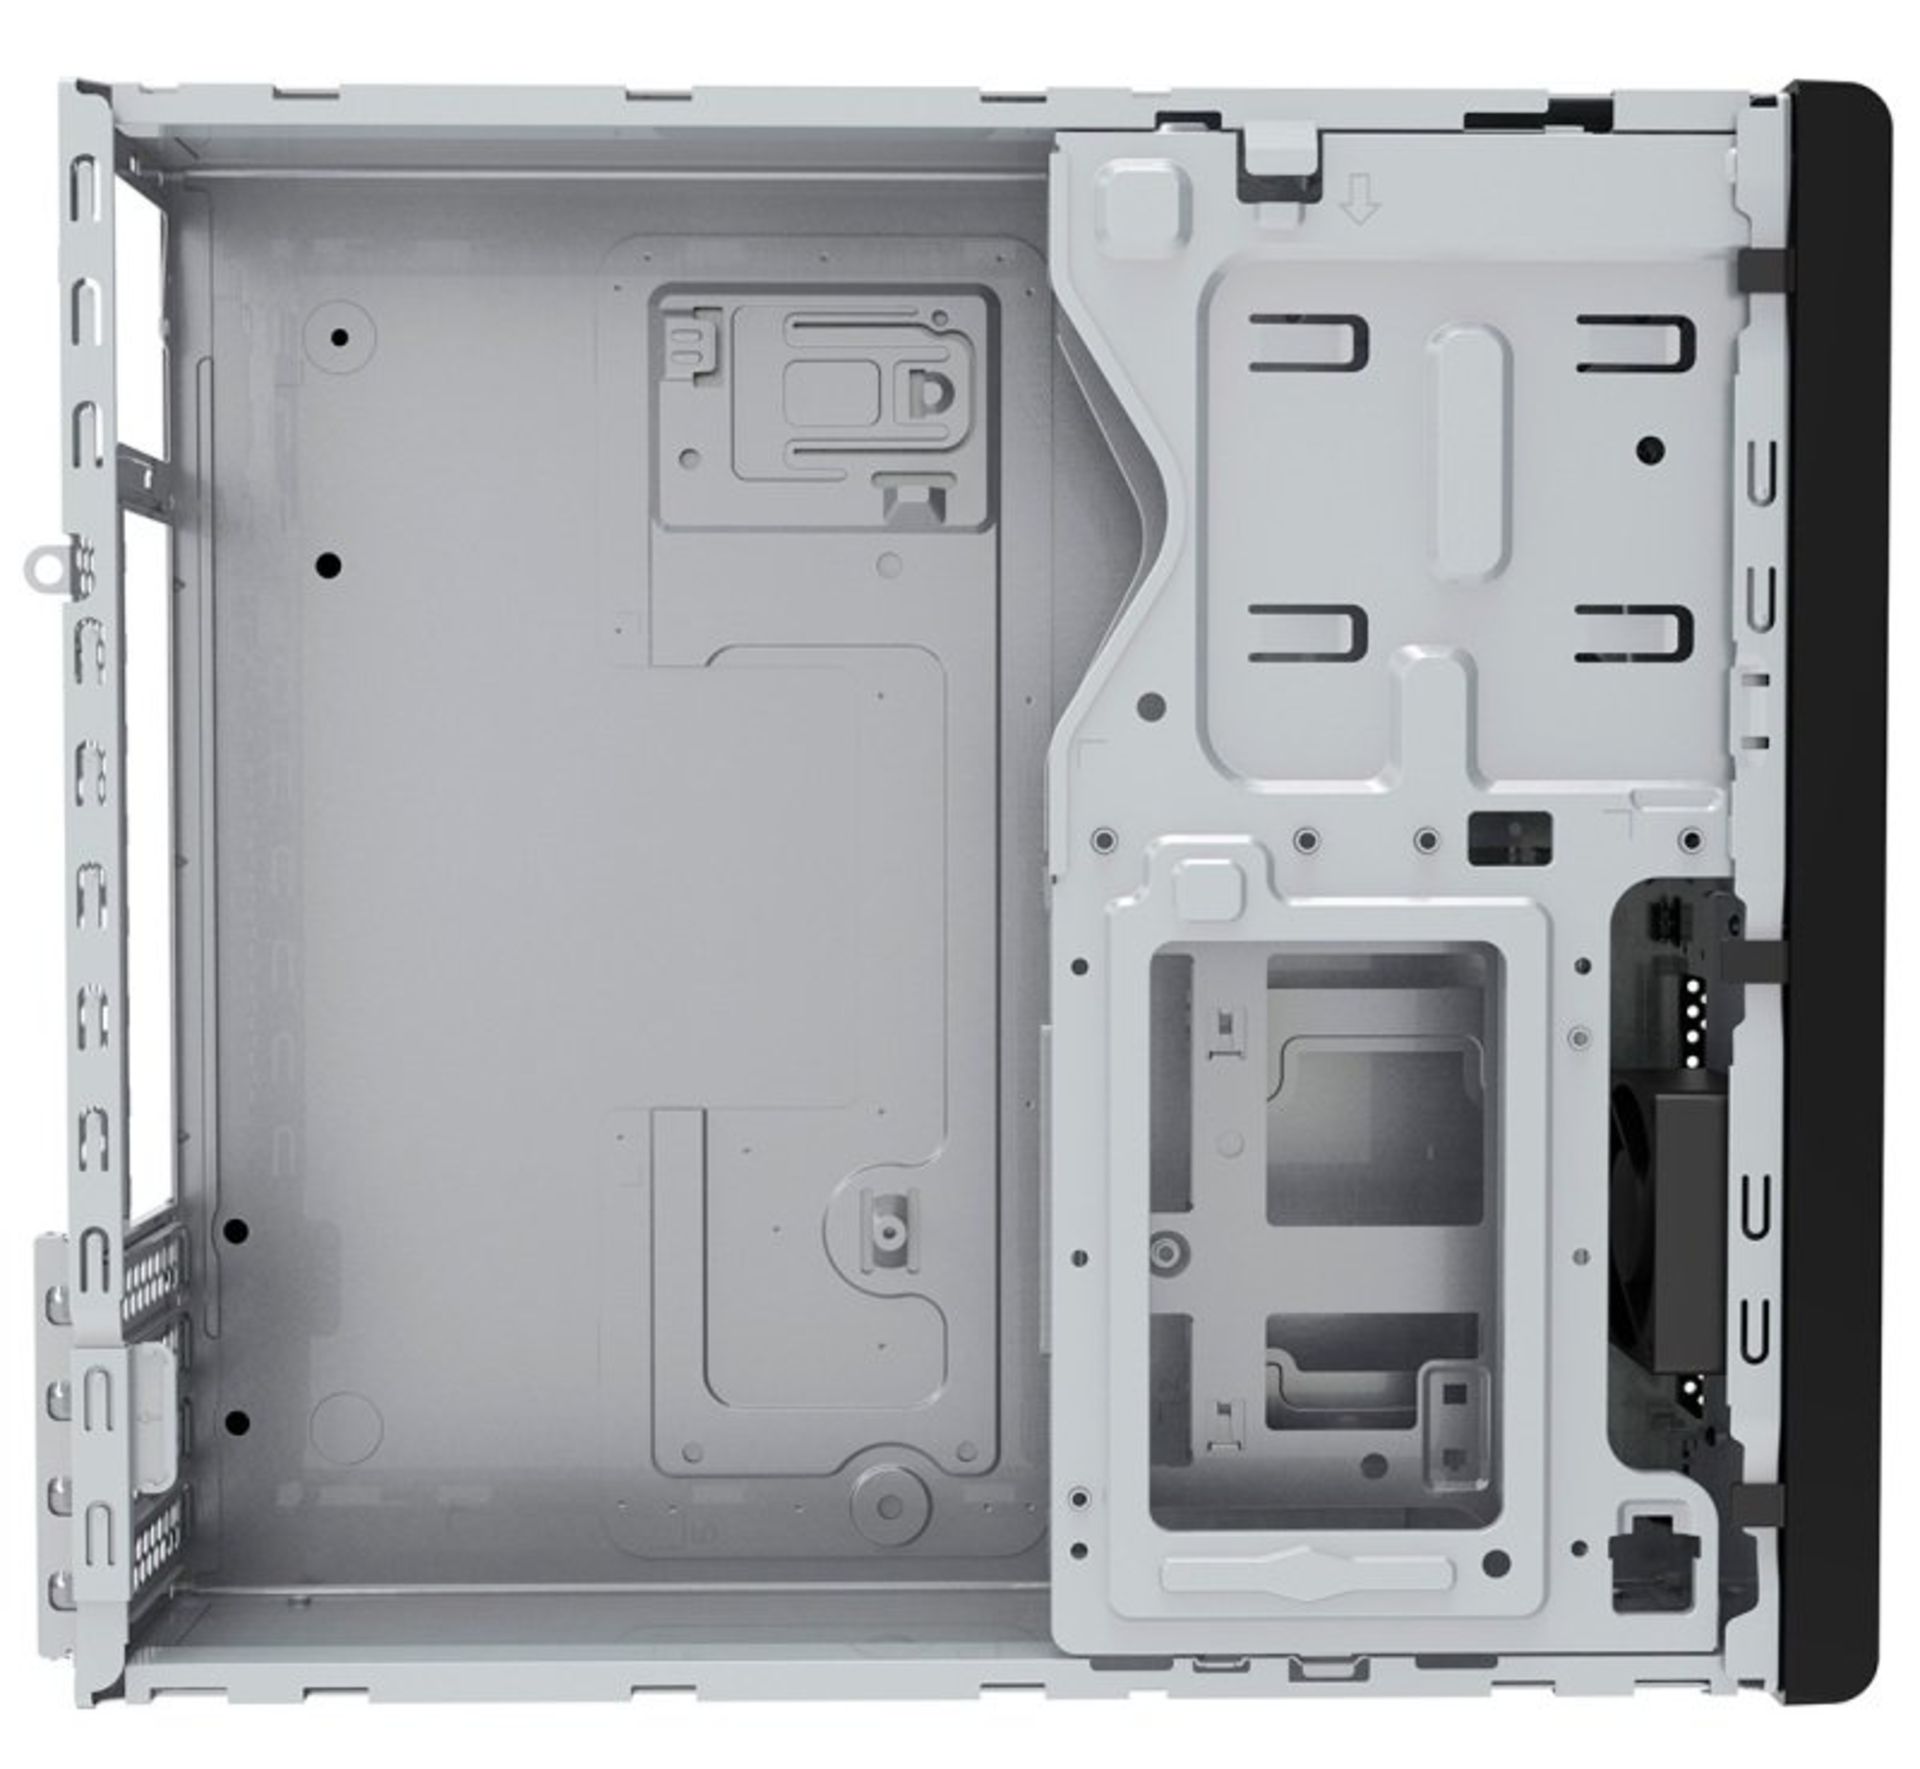 3x NEW & BOXED CIT S506 Micro ATX Desktop Case - BLACK. RRP £44.99 EACH. (PCK). The CiT S506 slim - Image 9 of 10